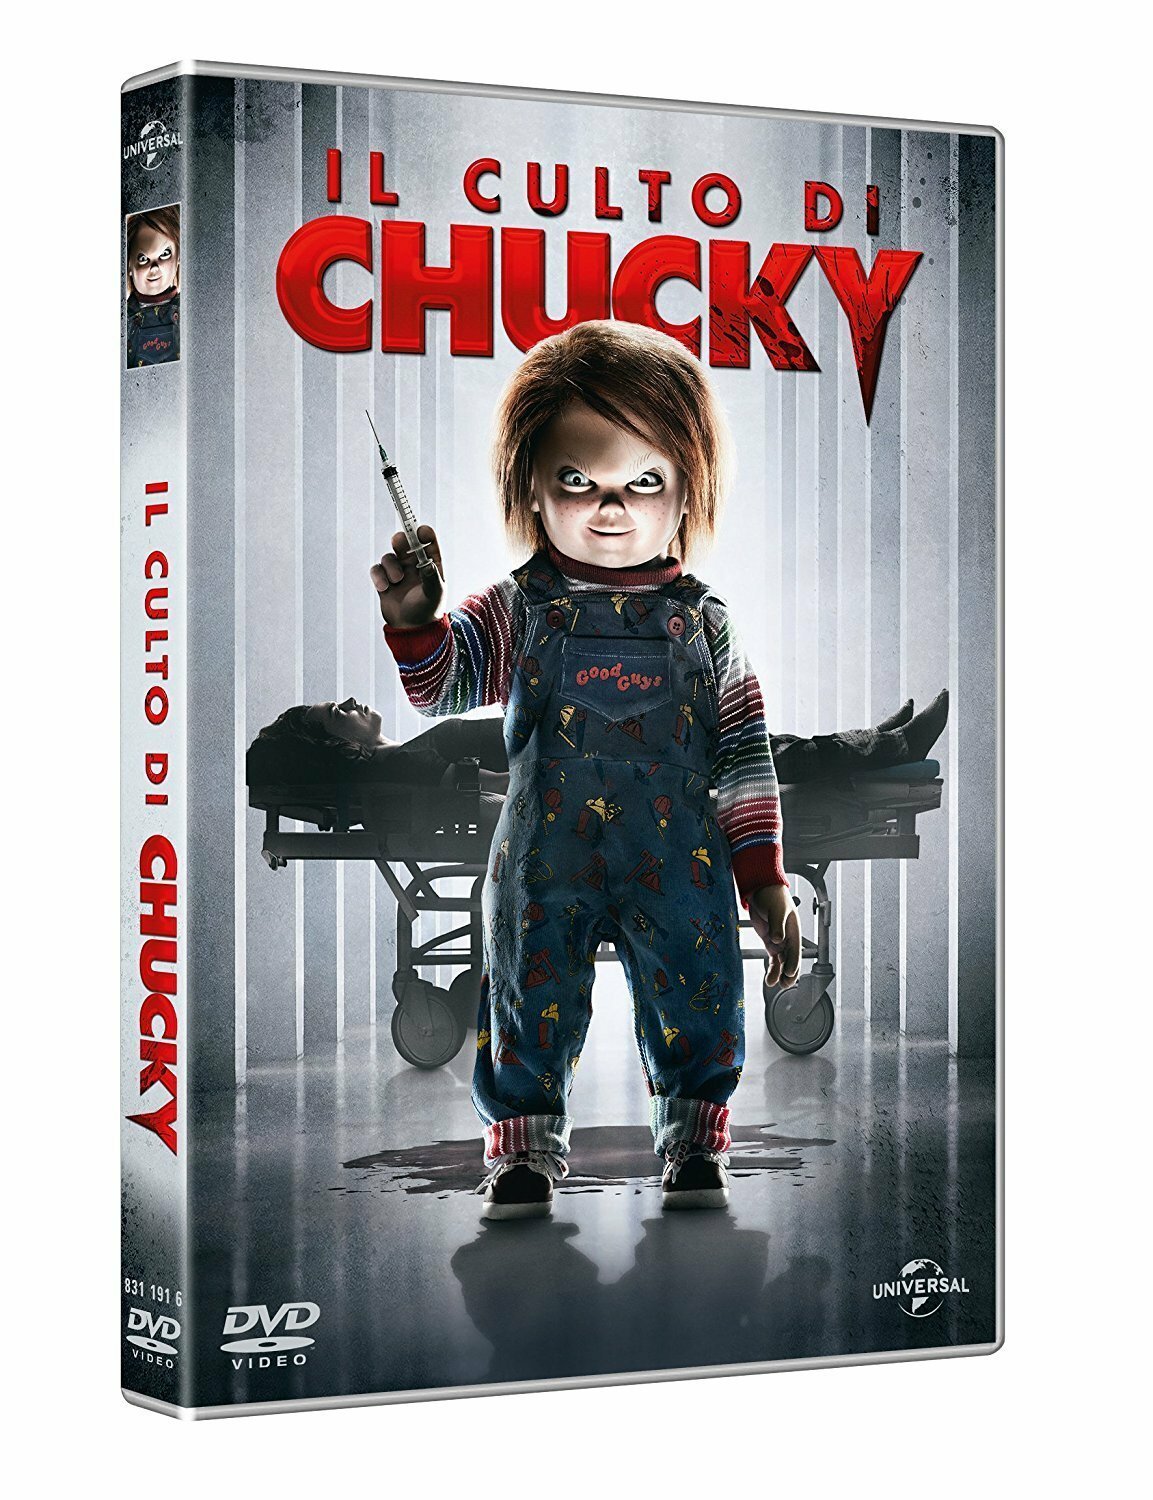 Il culto di Chucky è distribuito in Home Video da Universal